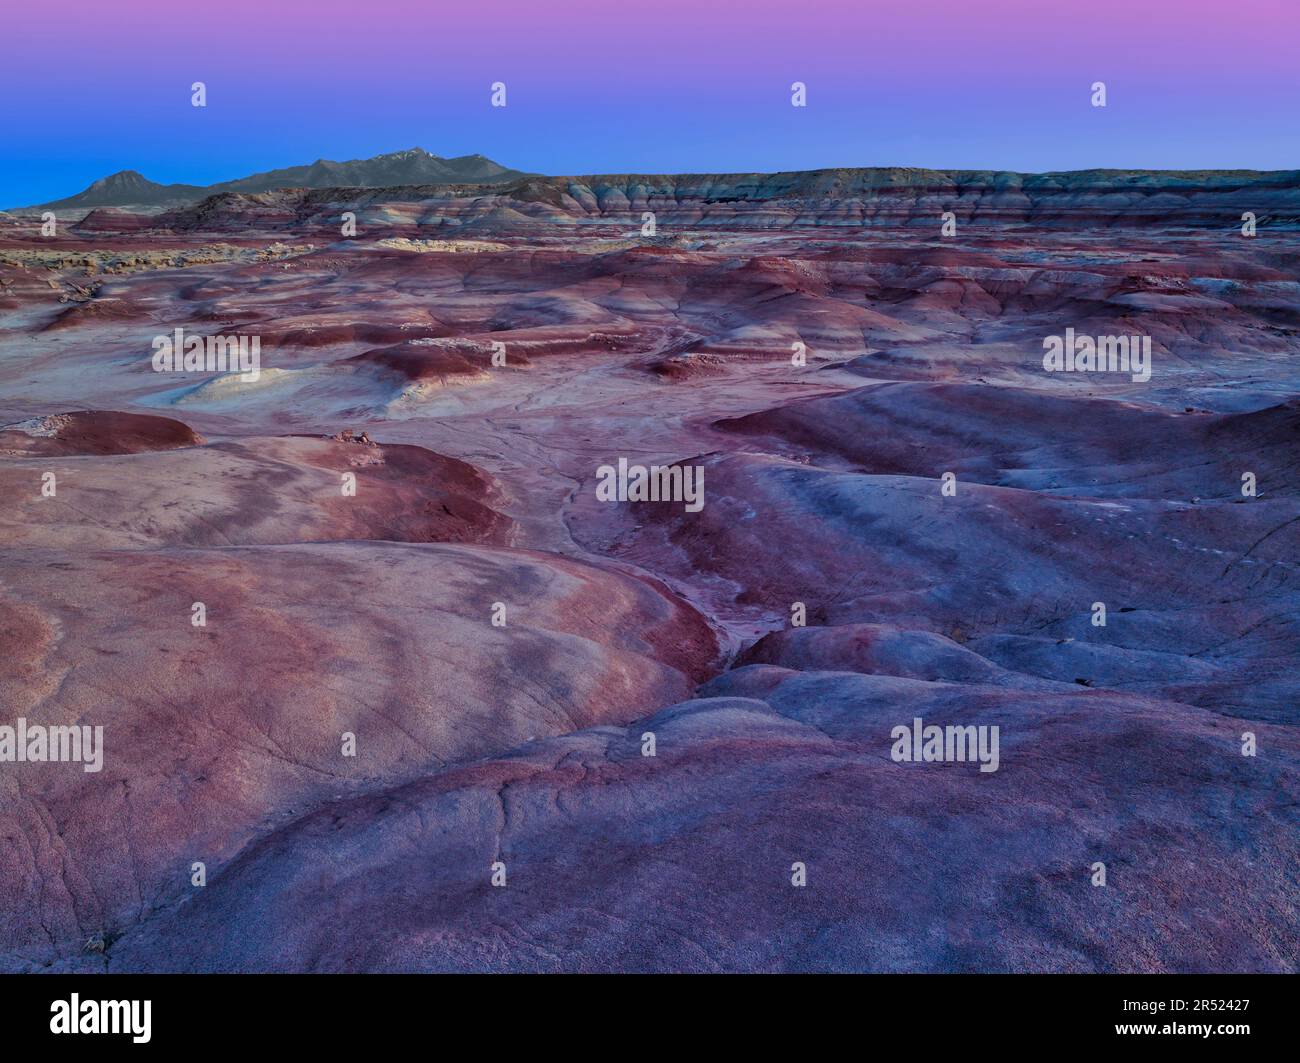 Utah Badlands Twilight - Drone vue sur les motifs colorés vus aux collines bentonite dans le sud des Badlands de l'Utah pendant l'heure bleue du crépuscule Banque D'Images